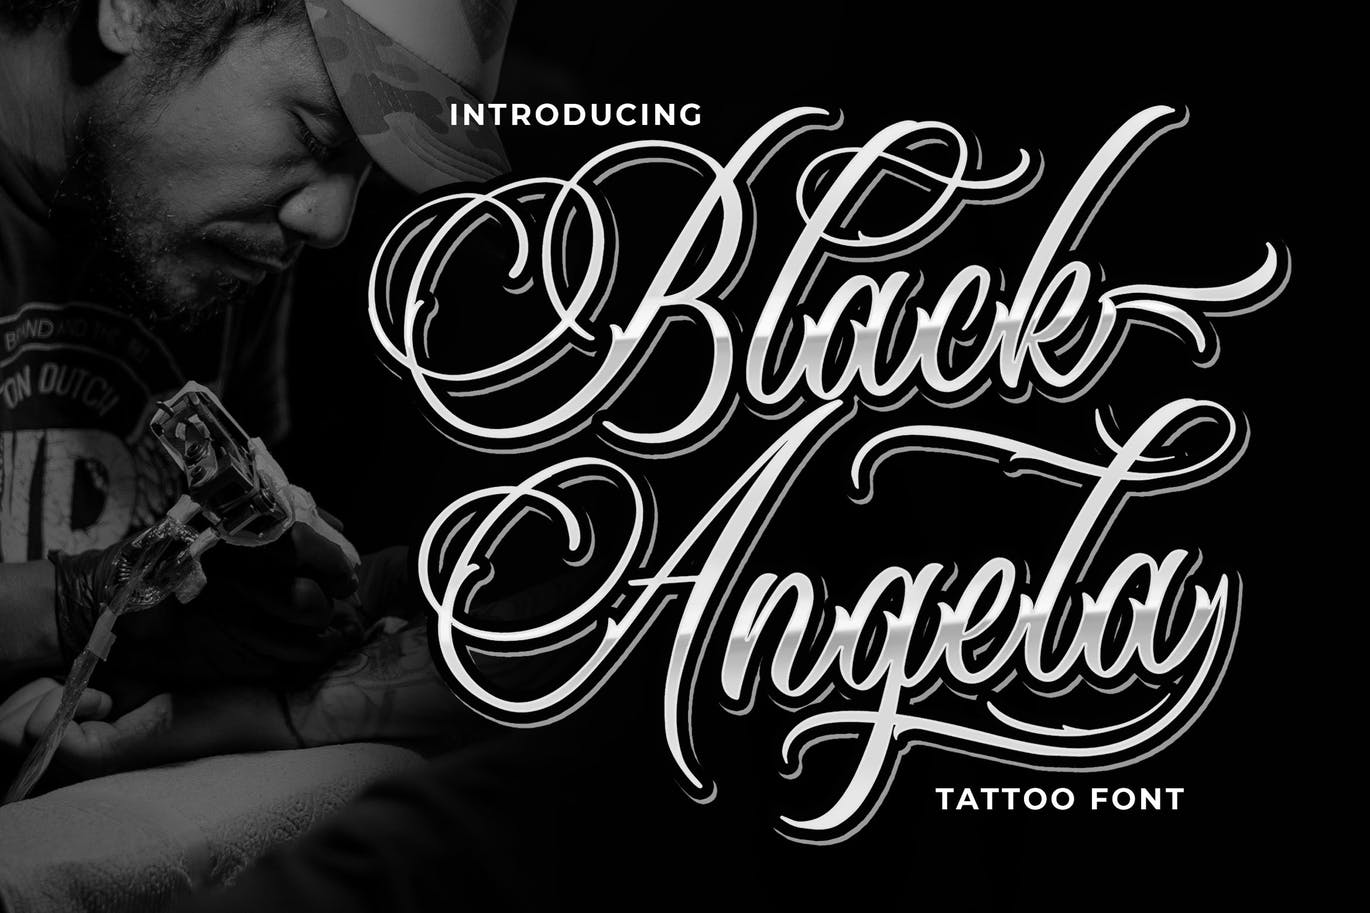 纹身艺术风格英文书法字体下载 Black Angela – Tattoo Font插图